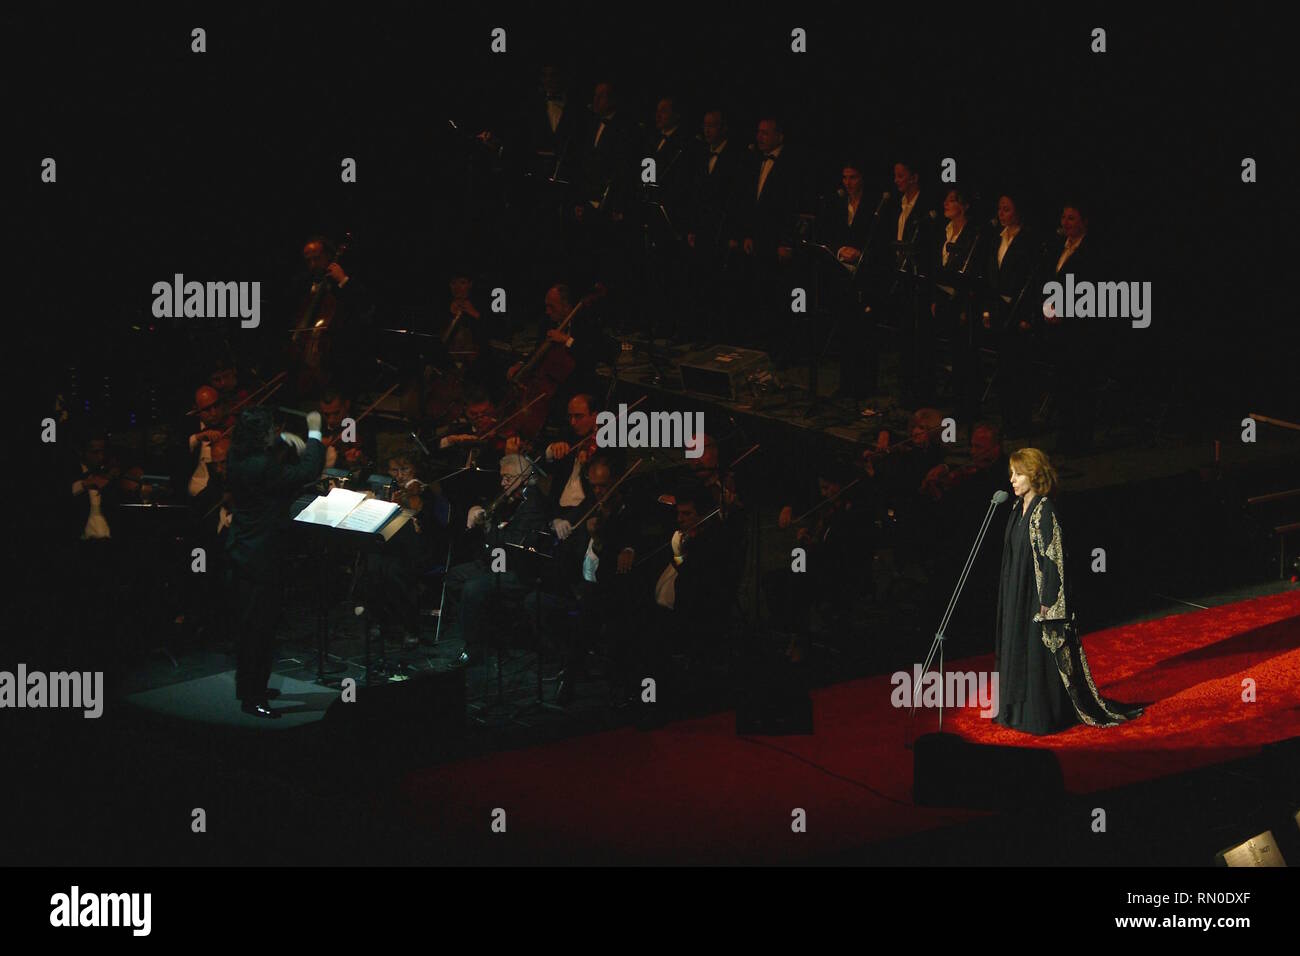 Libanesische Sängerin Fairouz, geboren Nouhad Haddad, dargestellt auf der Bühne während einer "live"-Konzert aussehen Stockfoto